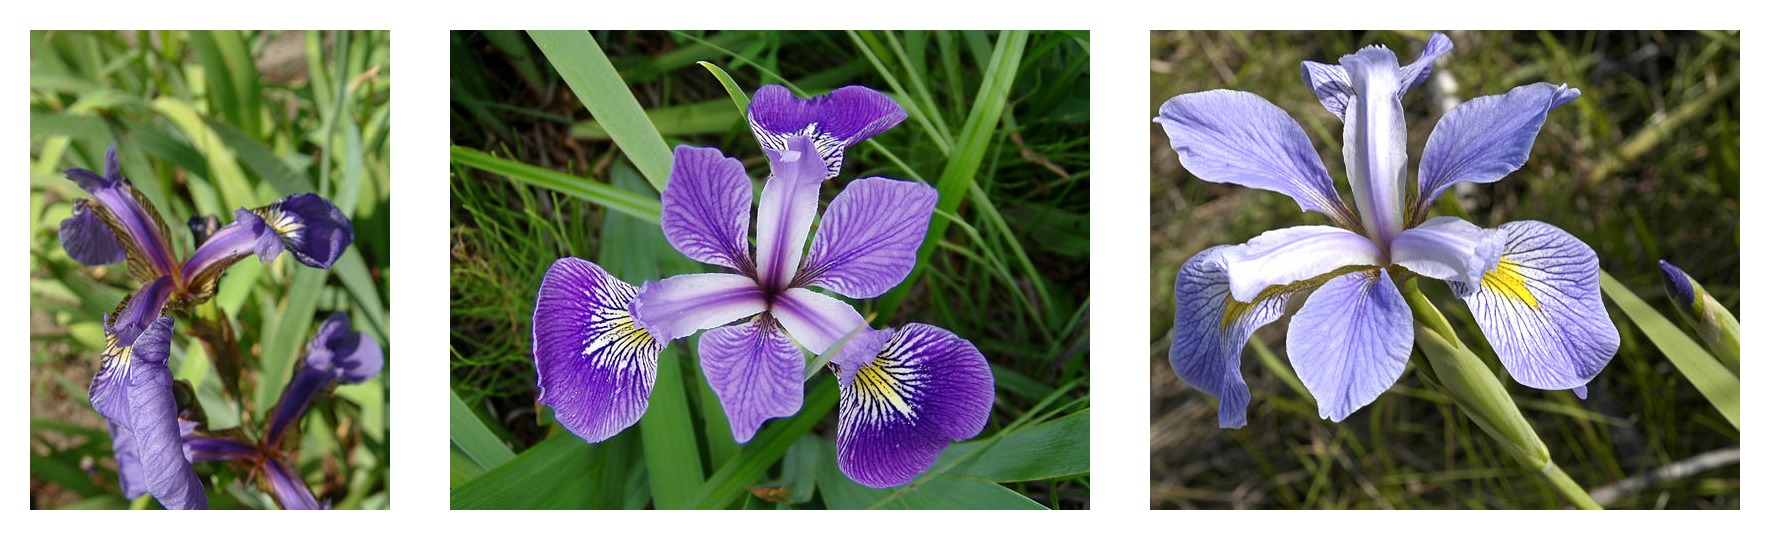 Géométrie des pétales comparée pour trois espèces d'iris: Iris setosa, Iris virginica et Iris versicolor